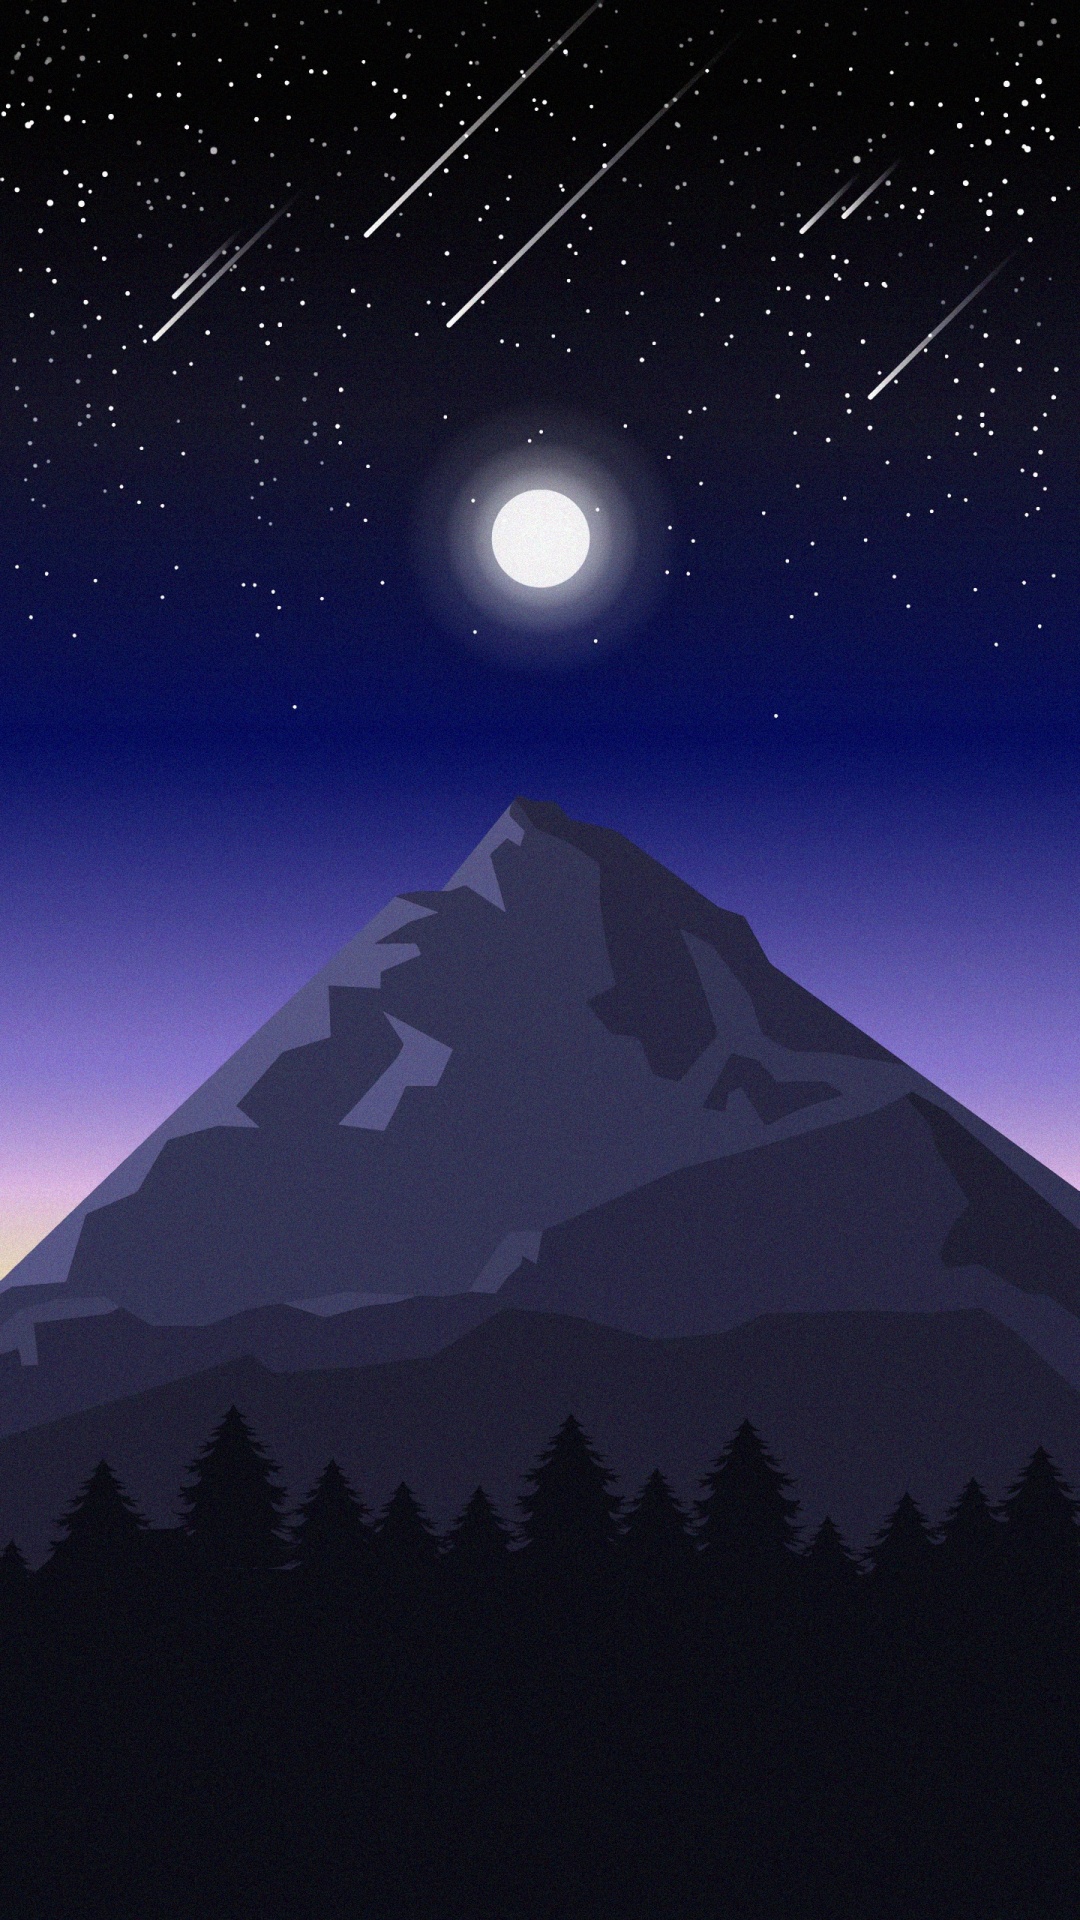 Bergigen Landschaftsformen, Licht, Himmlisches Ereignis, Nacht, Astronomisches Objekt. Wallpaper in 1080x1920 Resolution